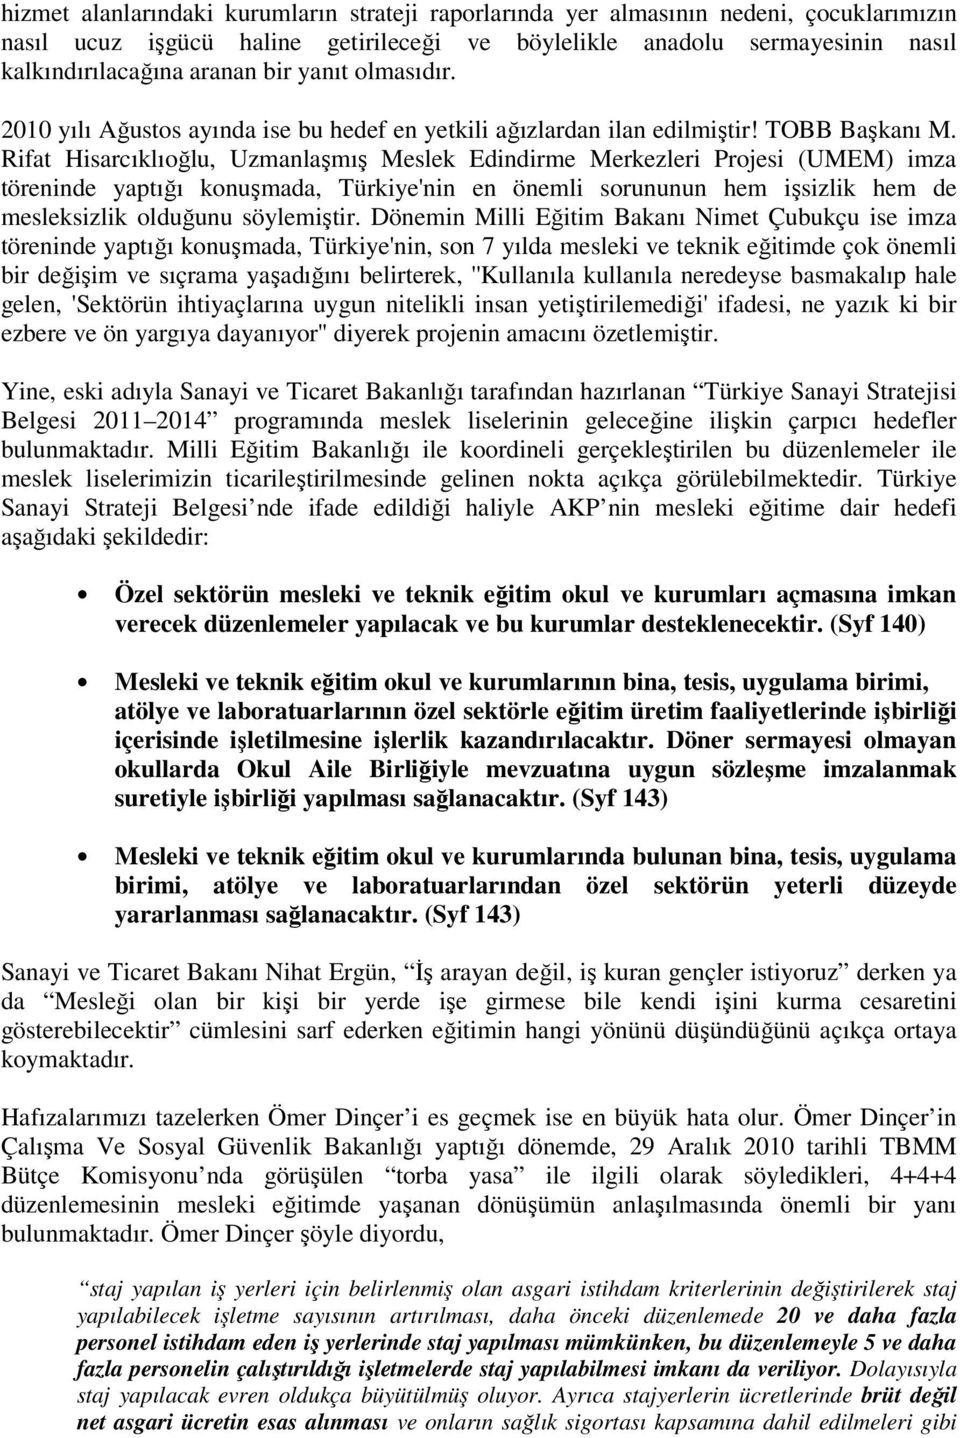 Rifat Hisarcıklıoğlu, Uzmanlaşmış Meslek Edindirme Merkezleri Projesi (UMEM) imza töreninde yaptığı konuşmada, Türkiye'nin en önemli sorununun hem işsizlik hem de mesleksizlik olduğunu söylemiştir.